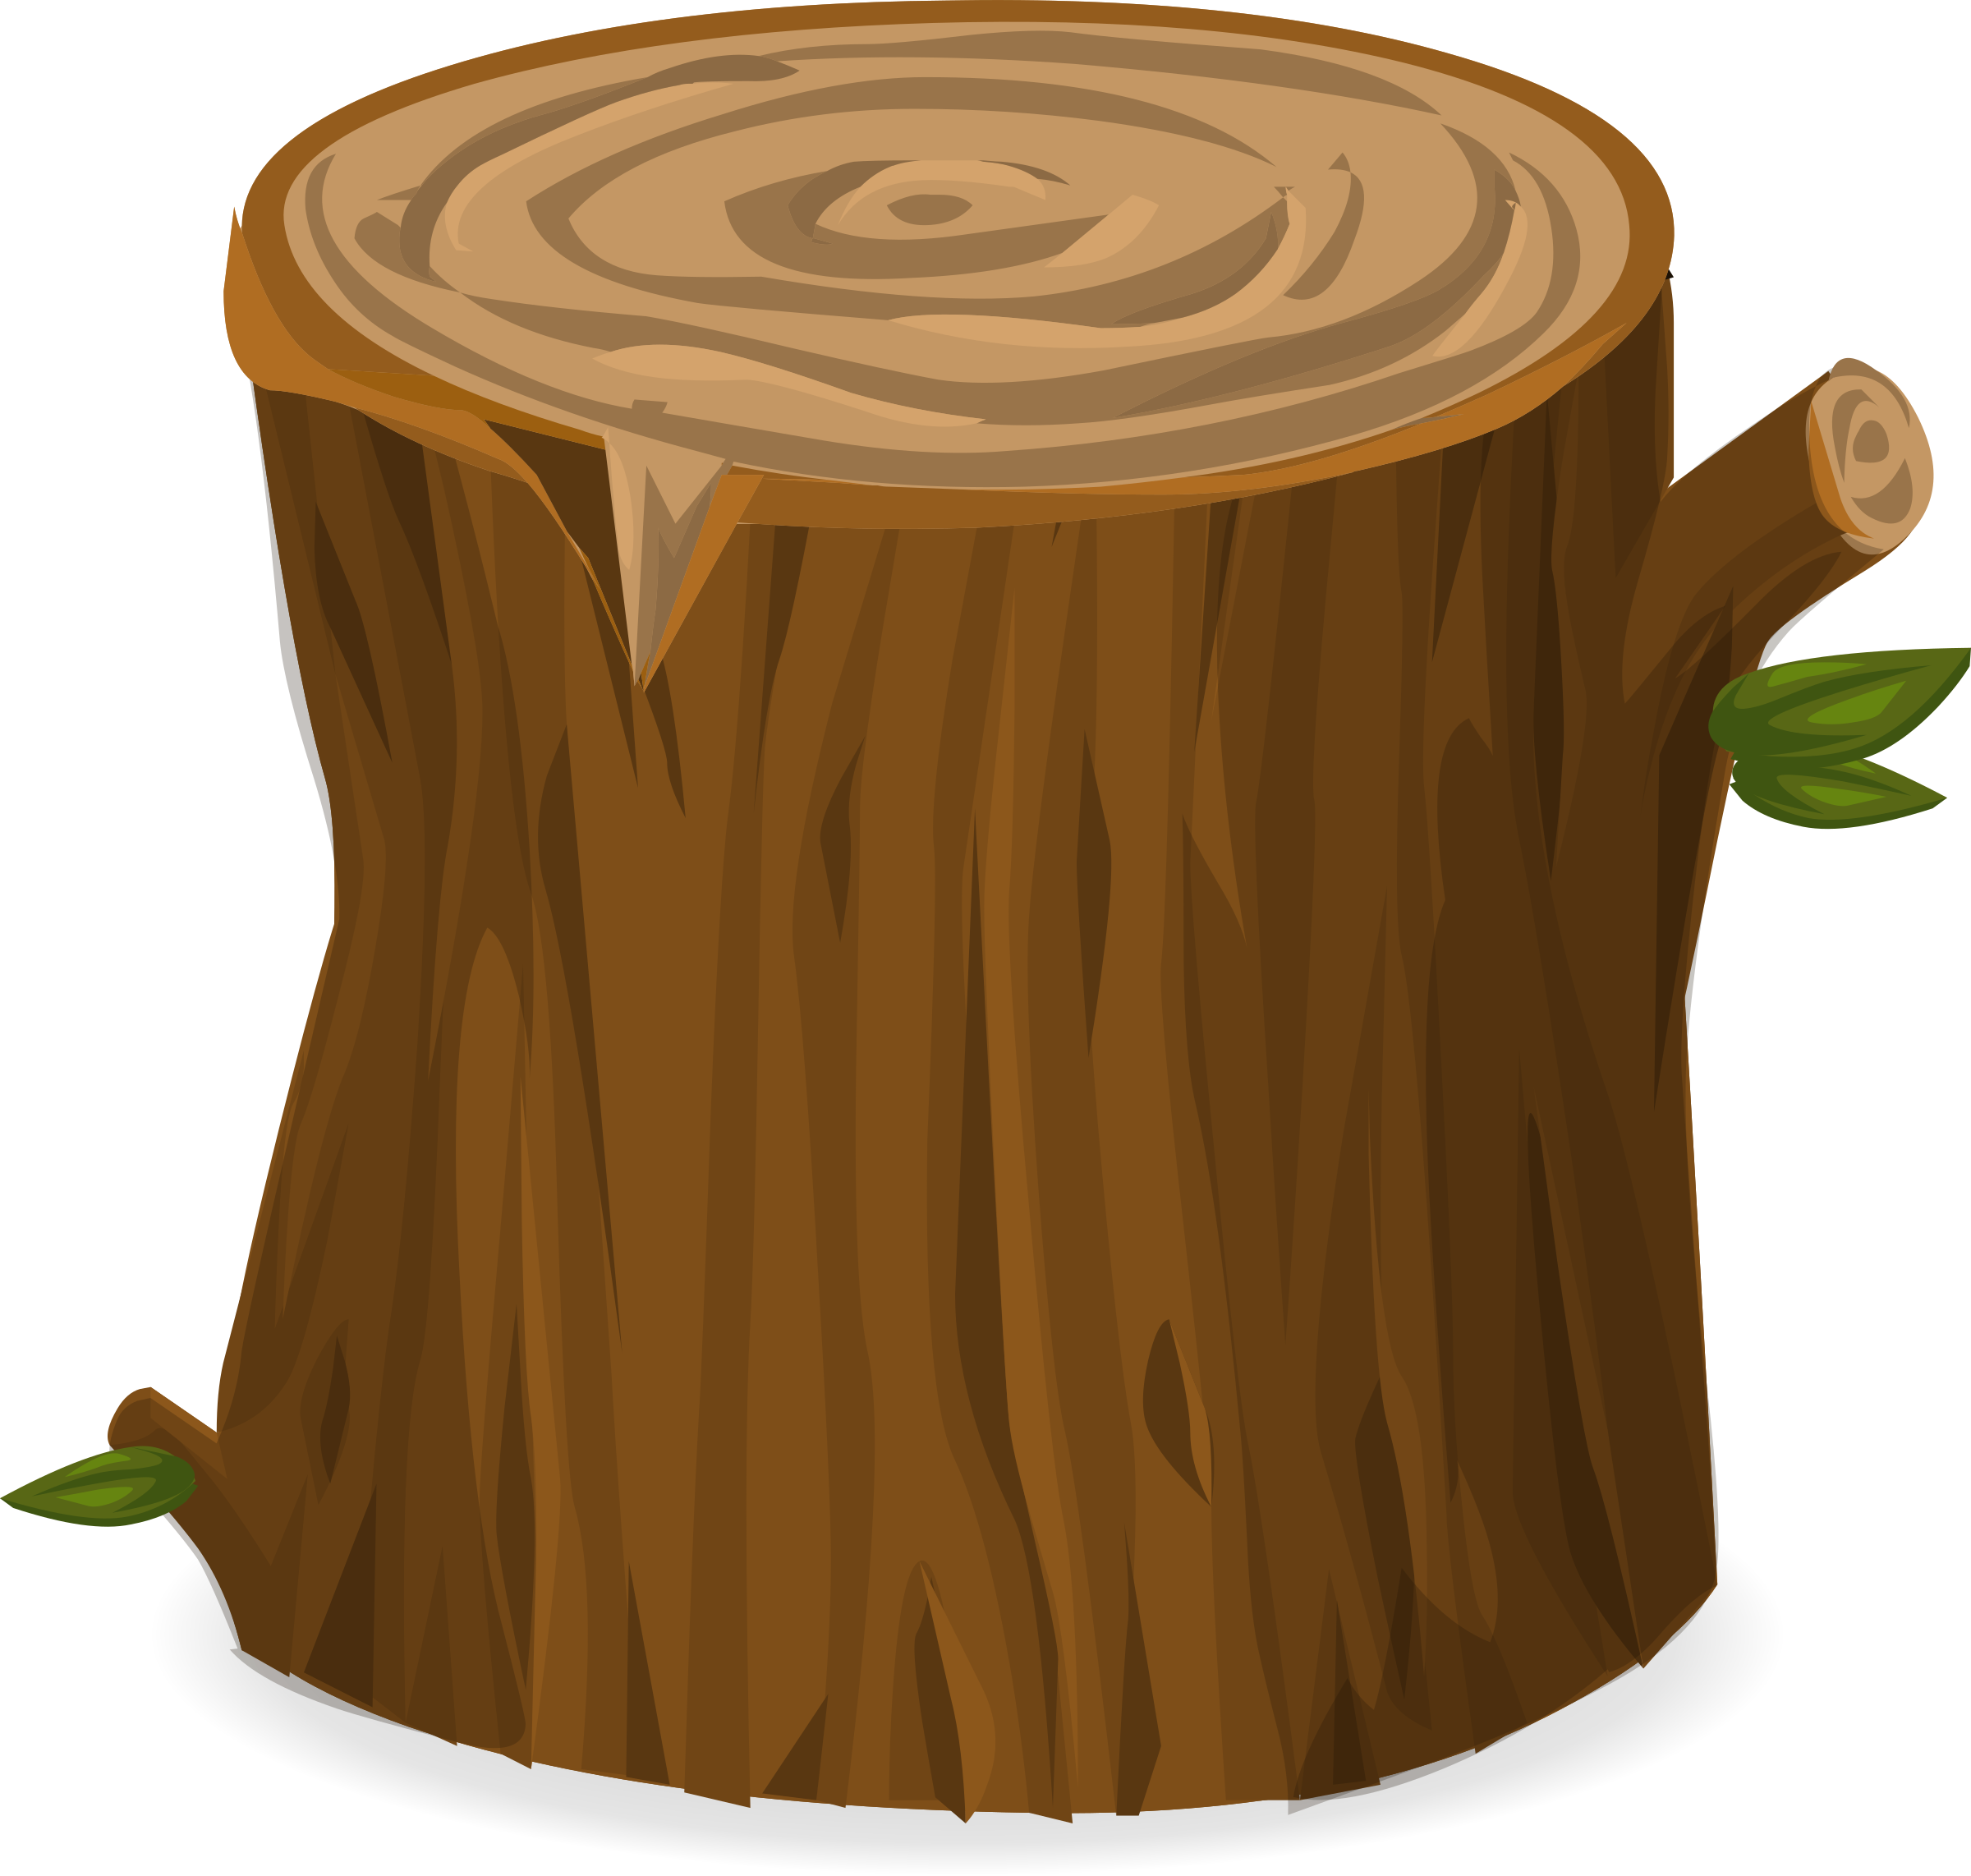 logs clipart stump